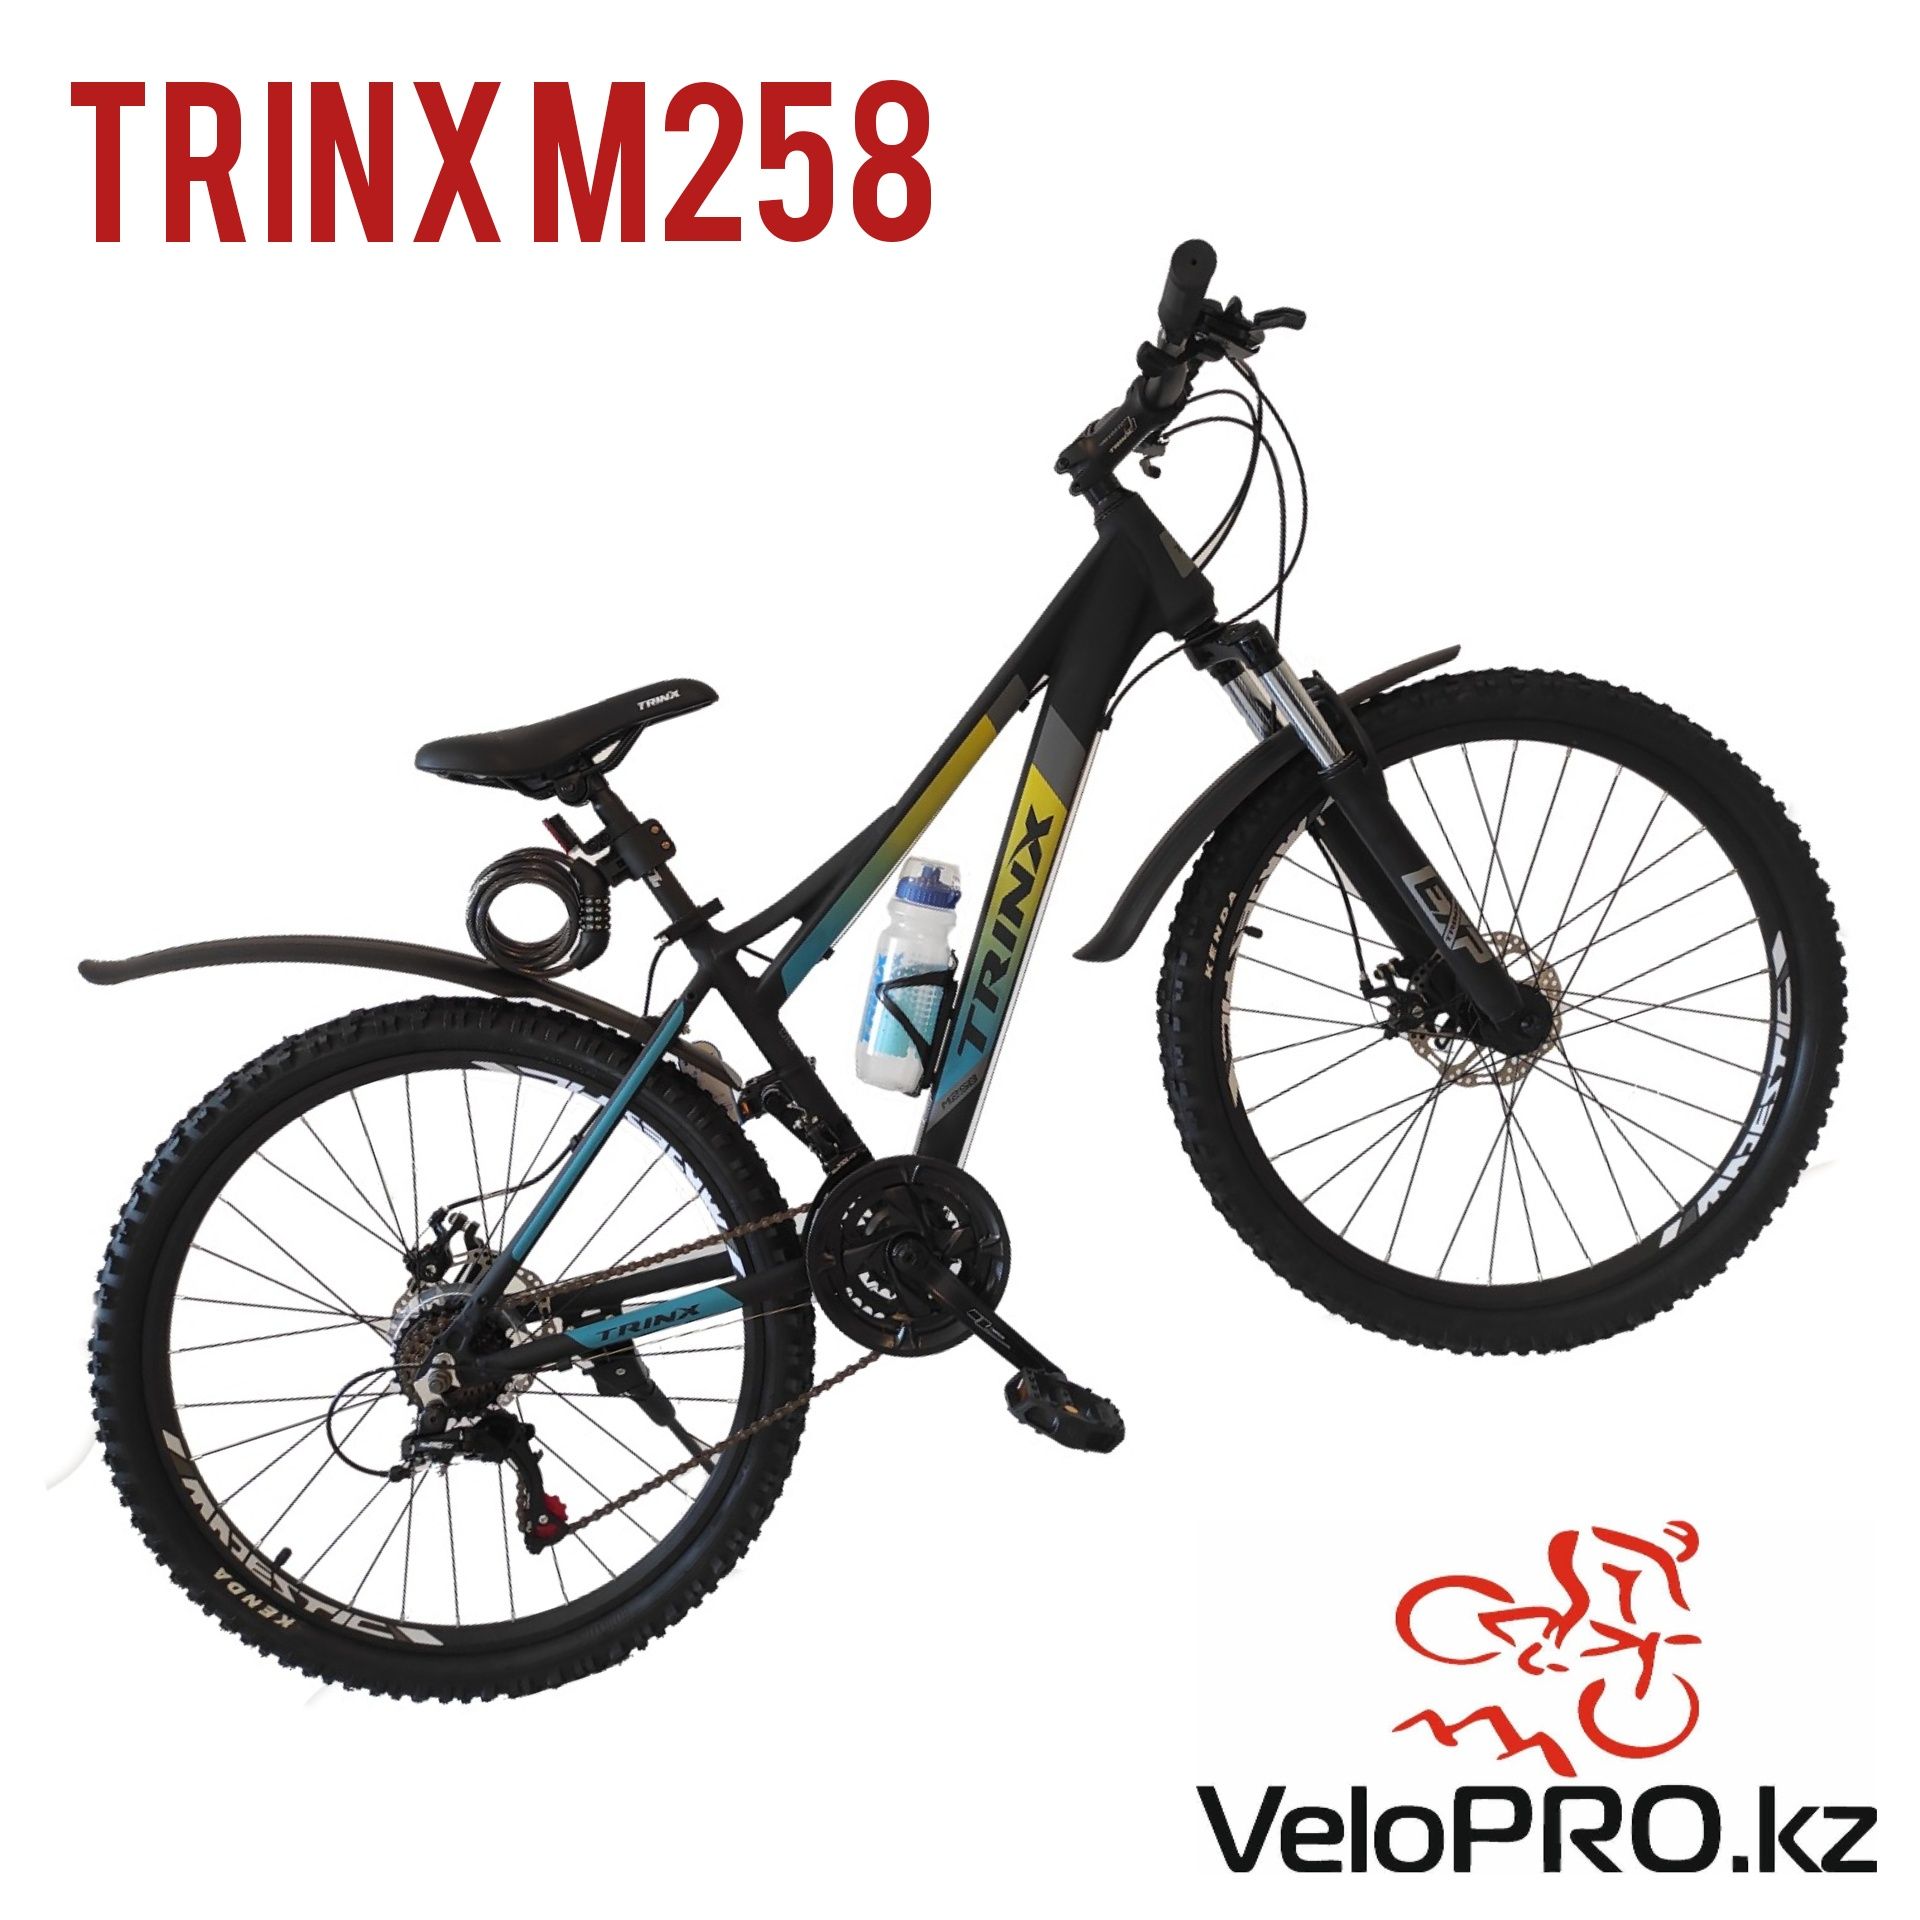 Велосипед Trinx m258. 15 рама 26 колеса. Доставка.